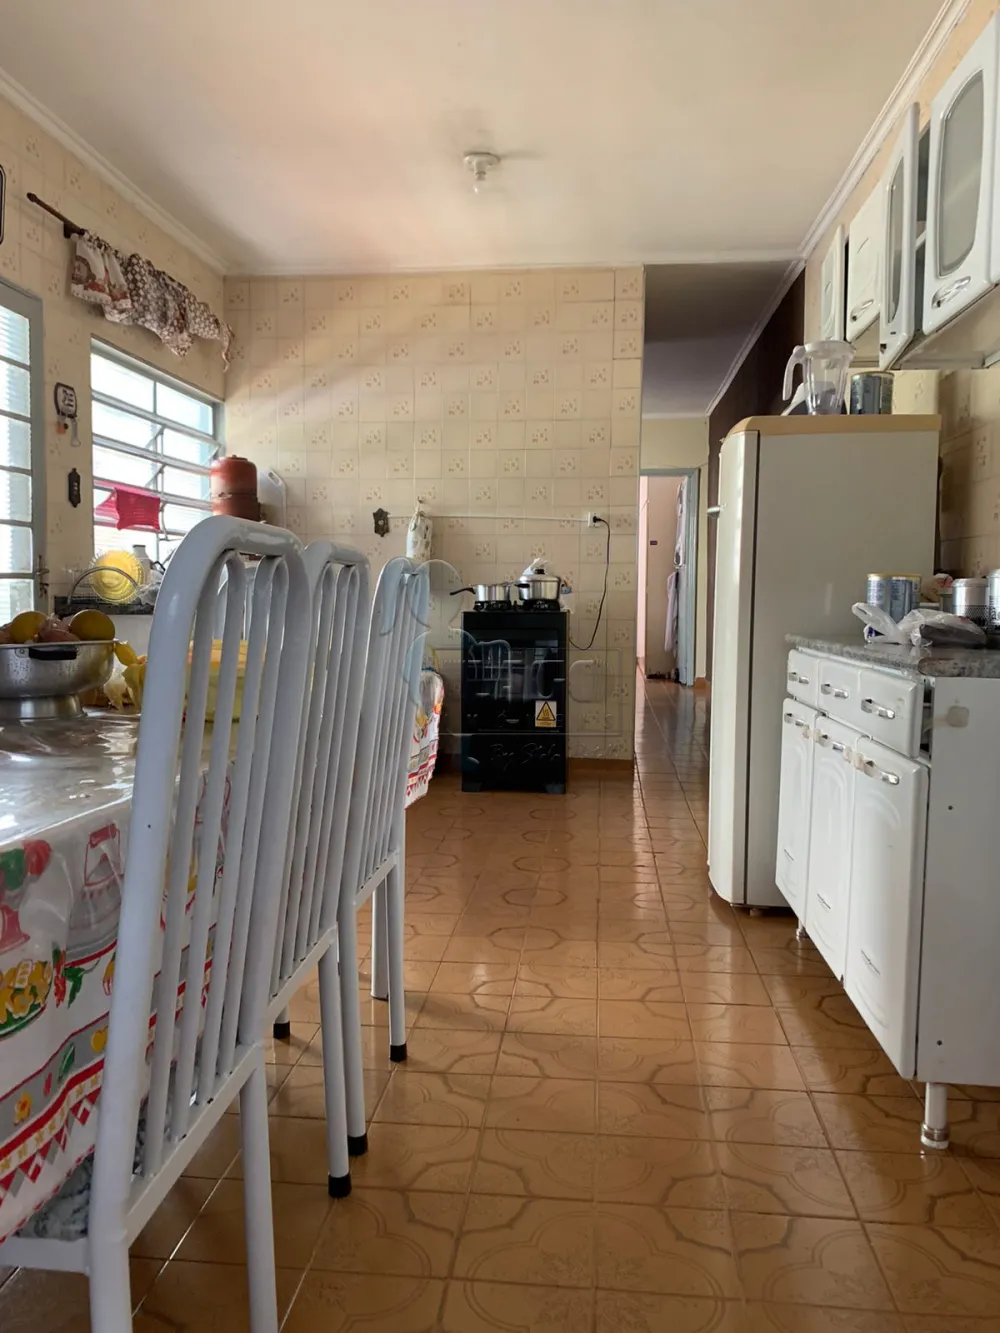 Comprar Casas / Padrão em Ribeirão Preto R$ 230.000,00 - Foto 14